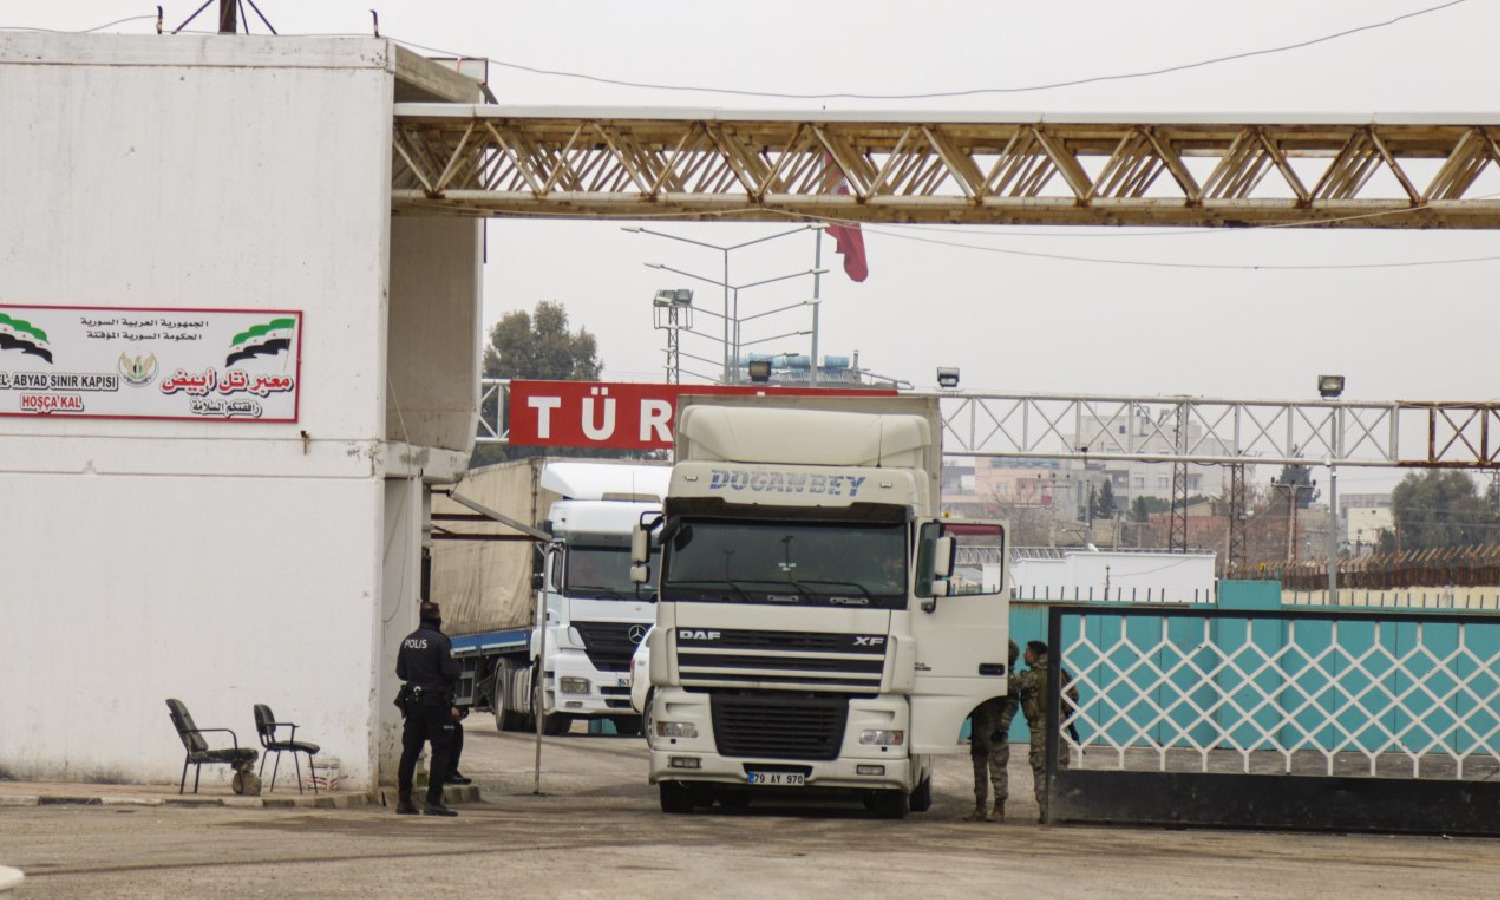 شاحنة تدخل عبر معبر "تل أبيض" الحدودي بين سوريا وتركيا- 17 من شباط 2020 (معبر تل أبيض الحدودي)